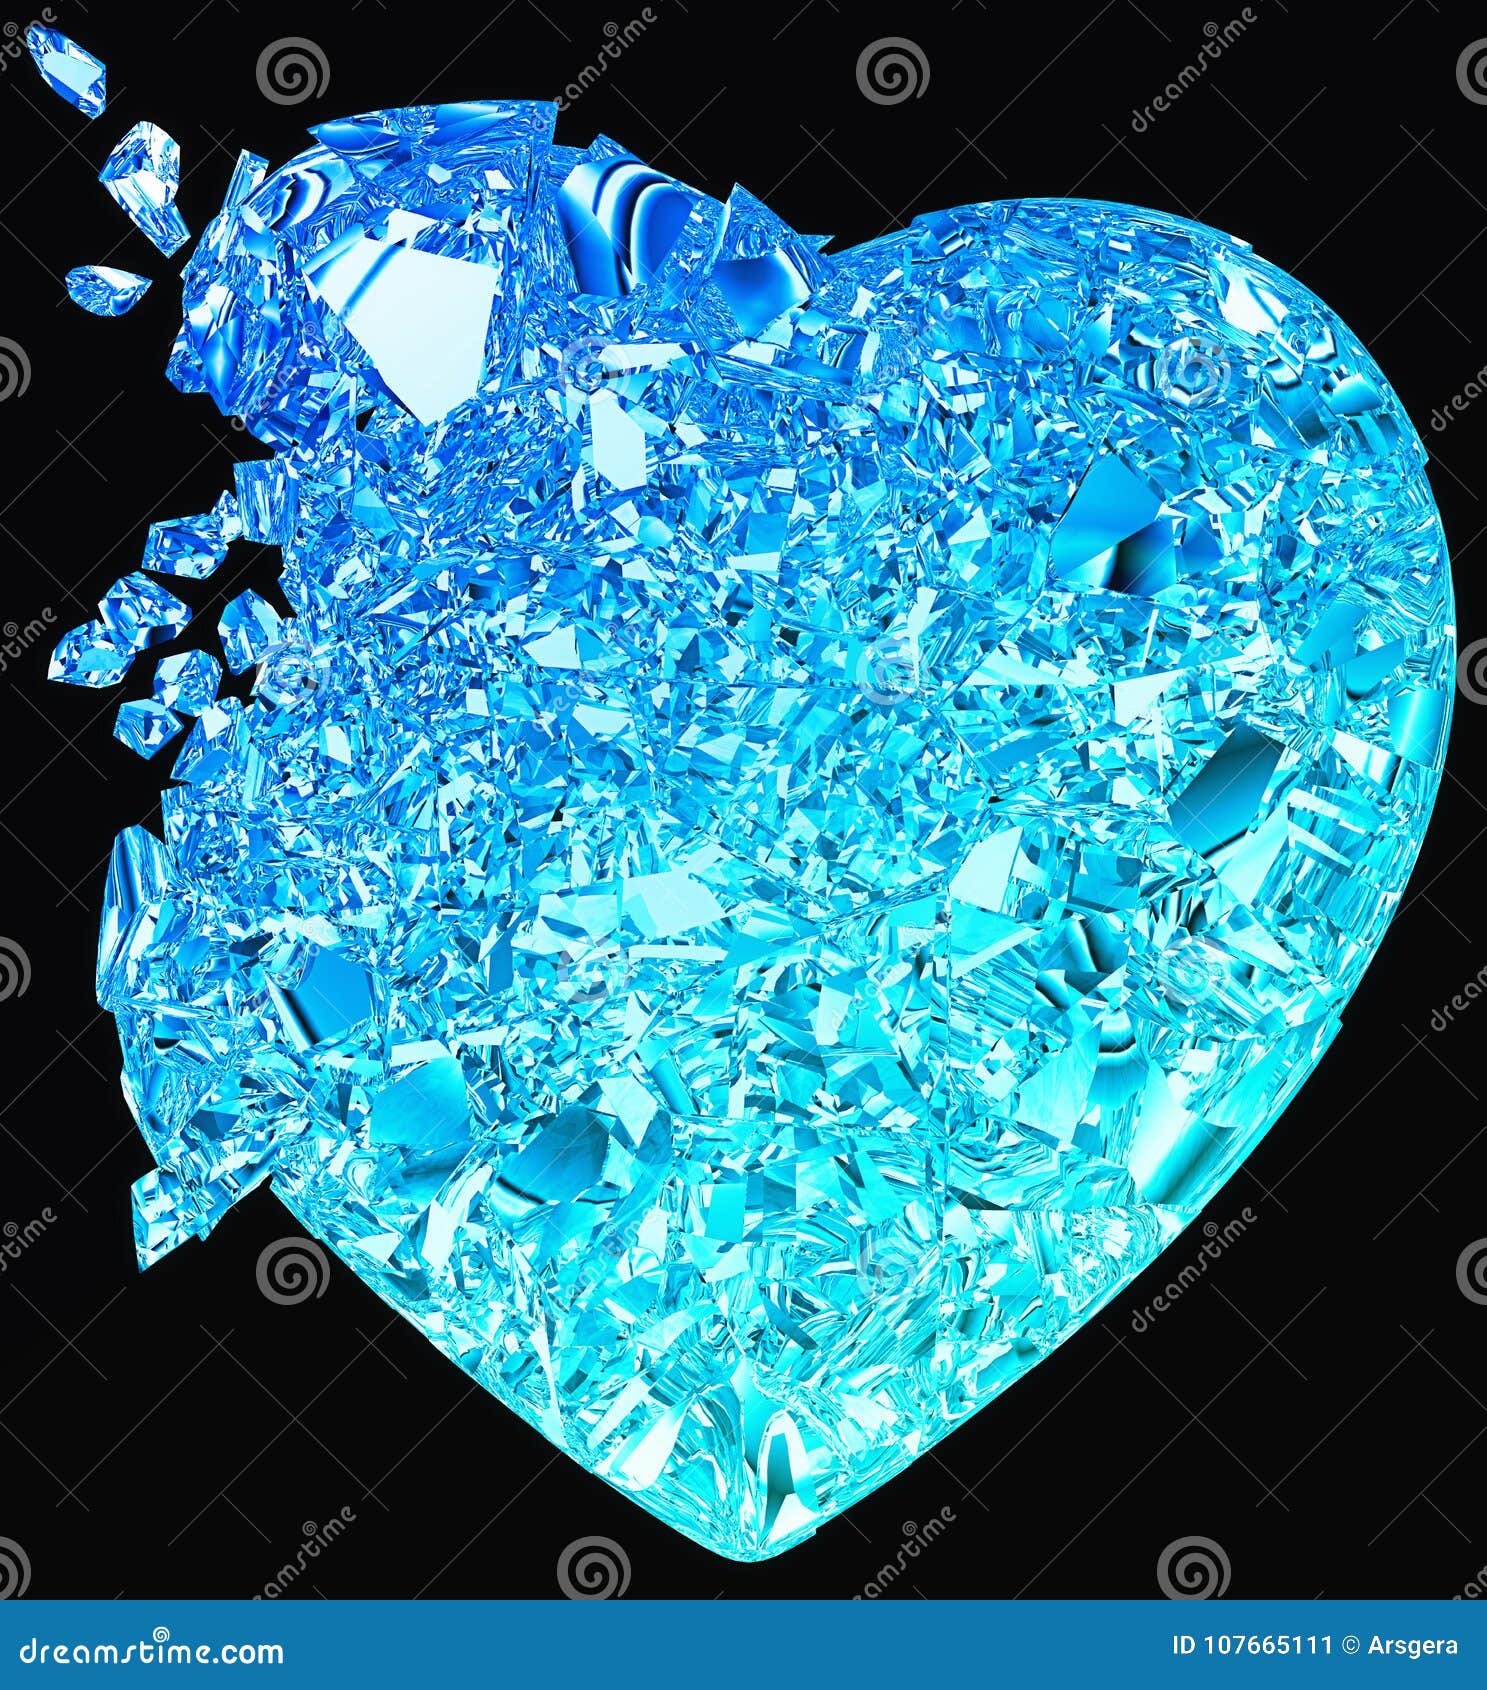 blue broken heart: unrequited love